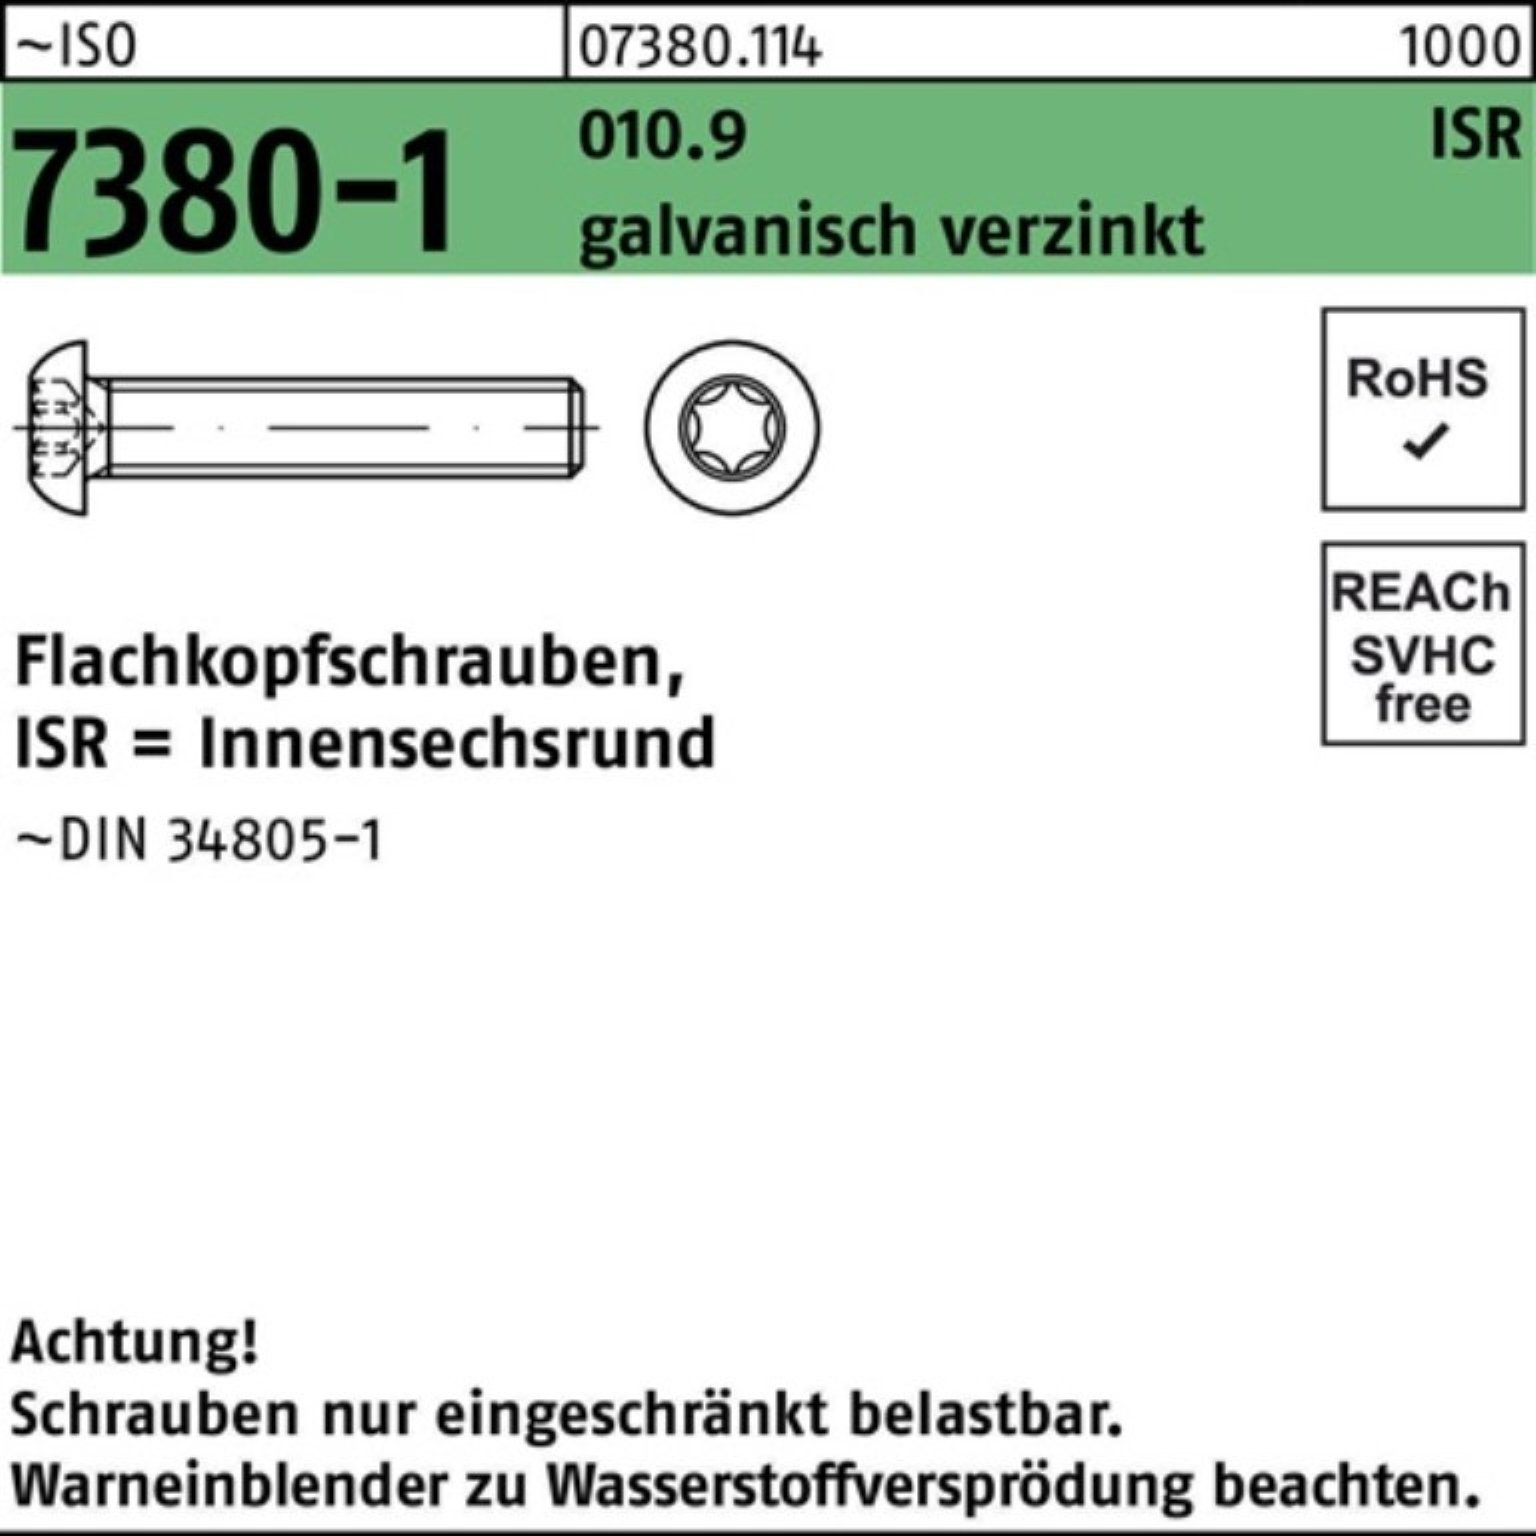 Reyher Schraube galv.verz. 010.9 ISR Pack Flachkopfschraube M8x35-T40 200er ISO 7380-1